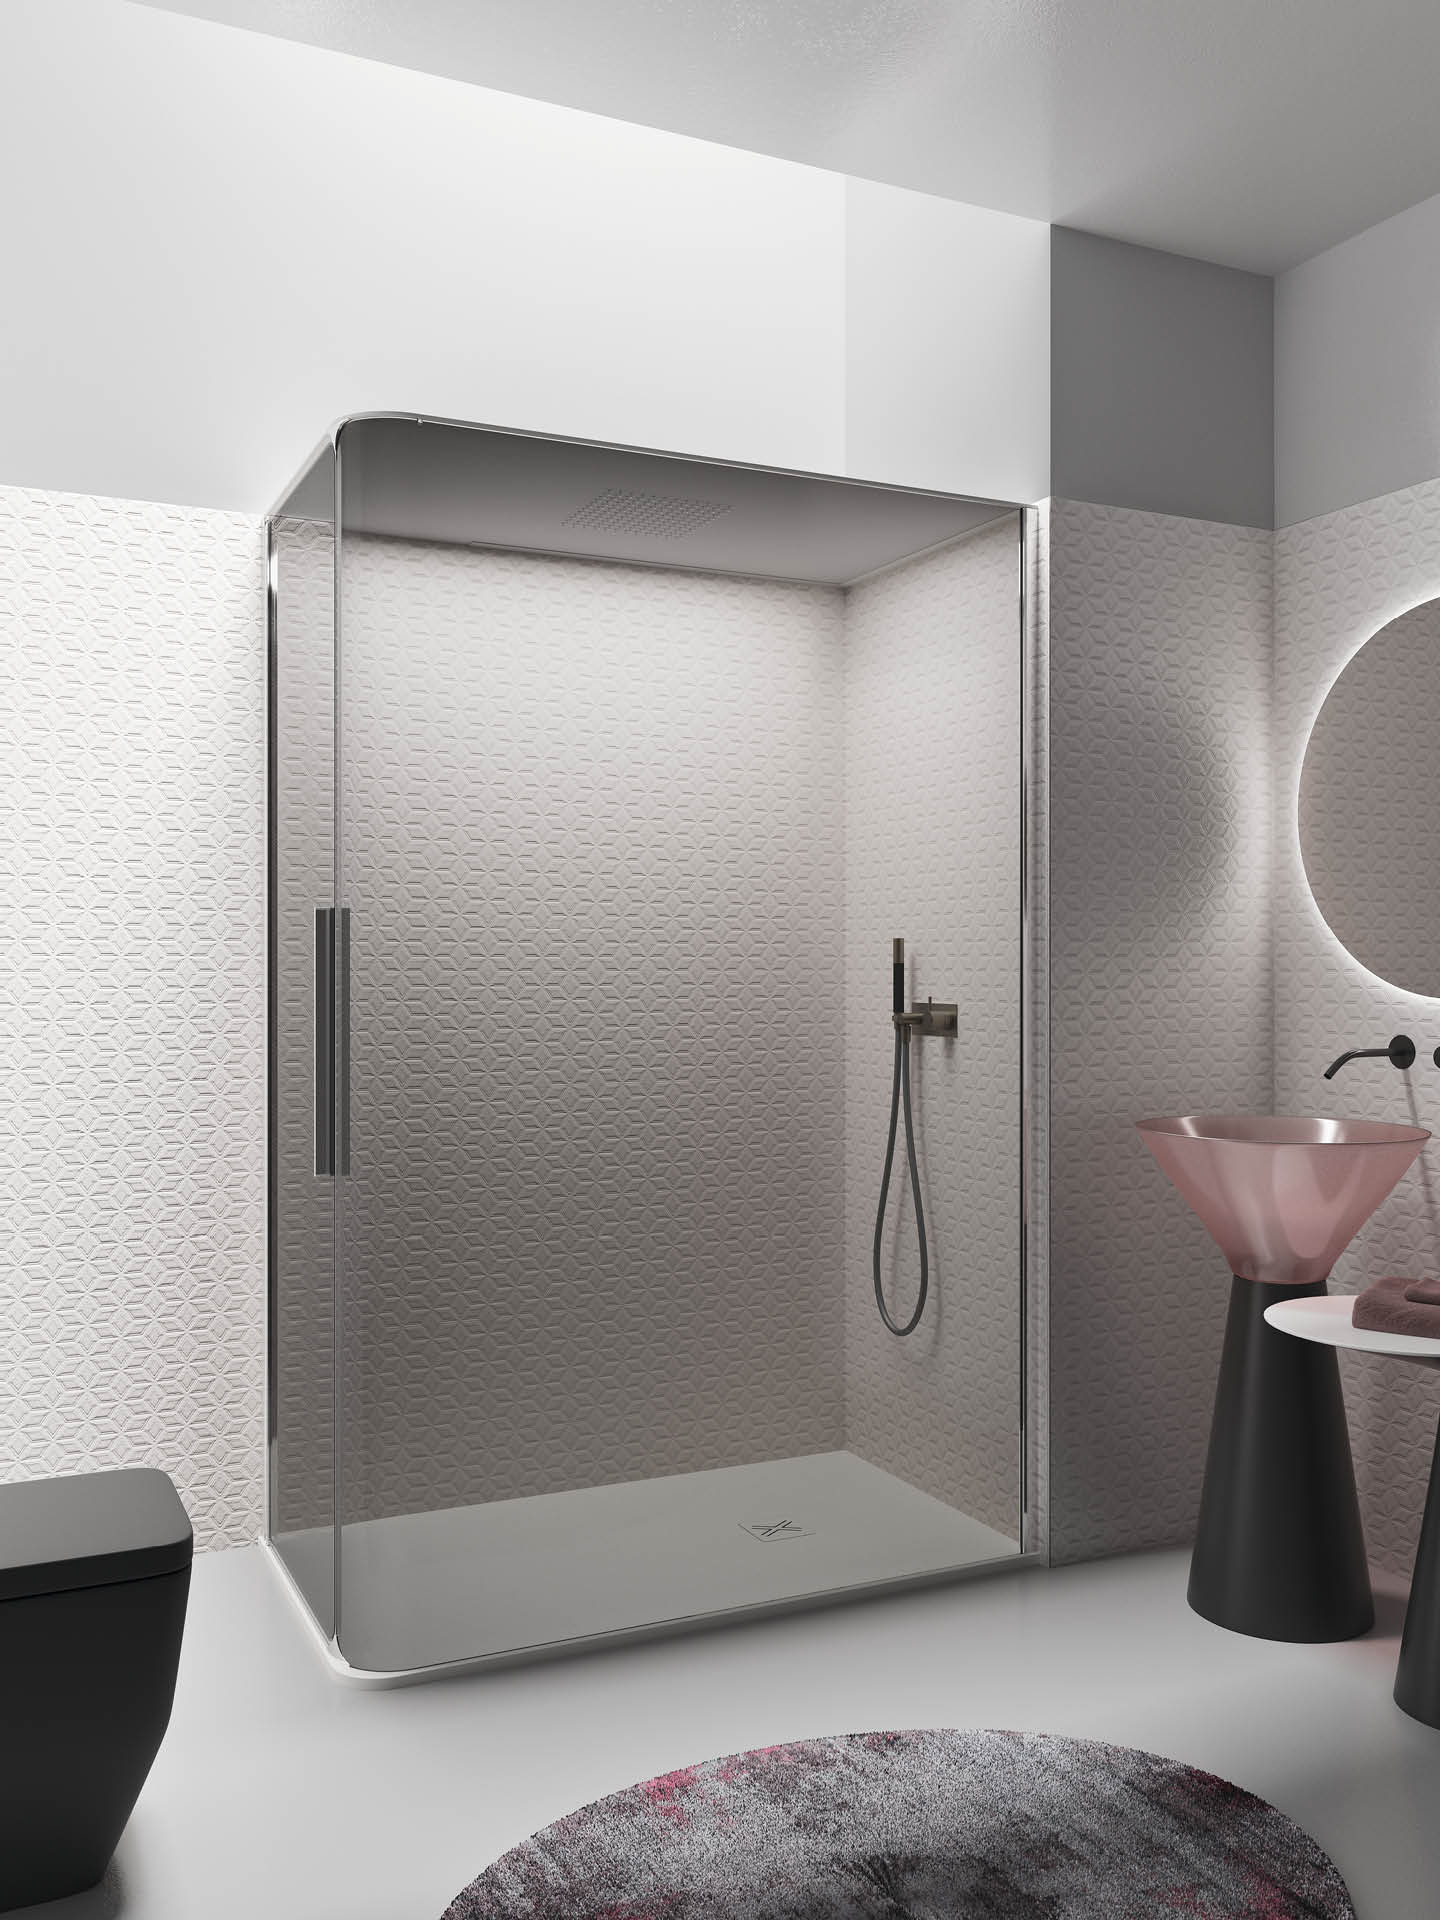 bobox plus box doccia di design di colore bianco con tetto per contenimento del calore